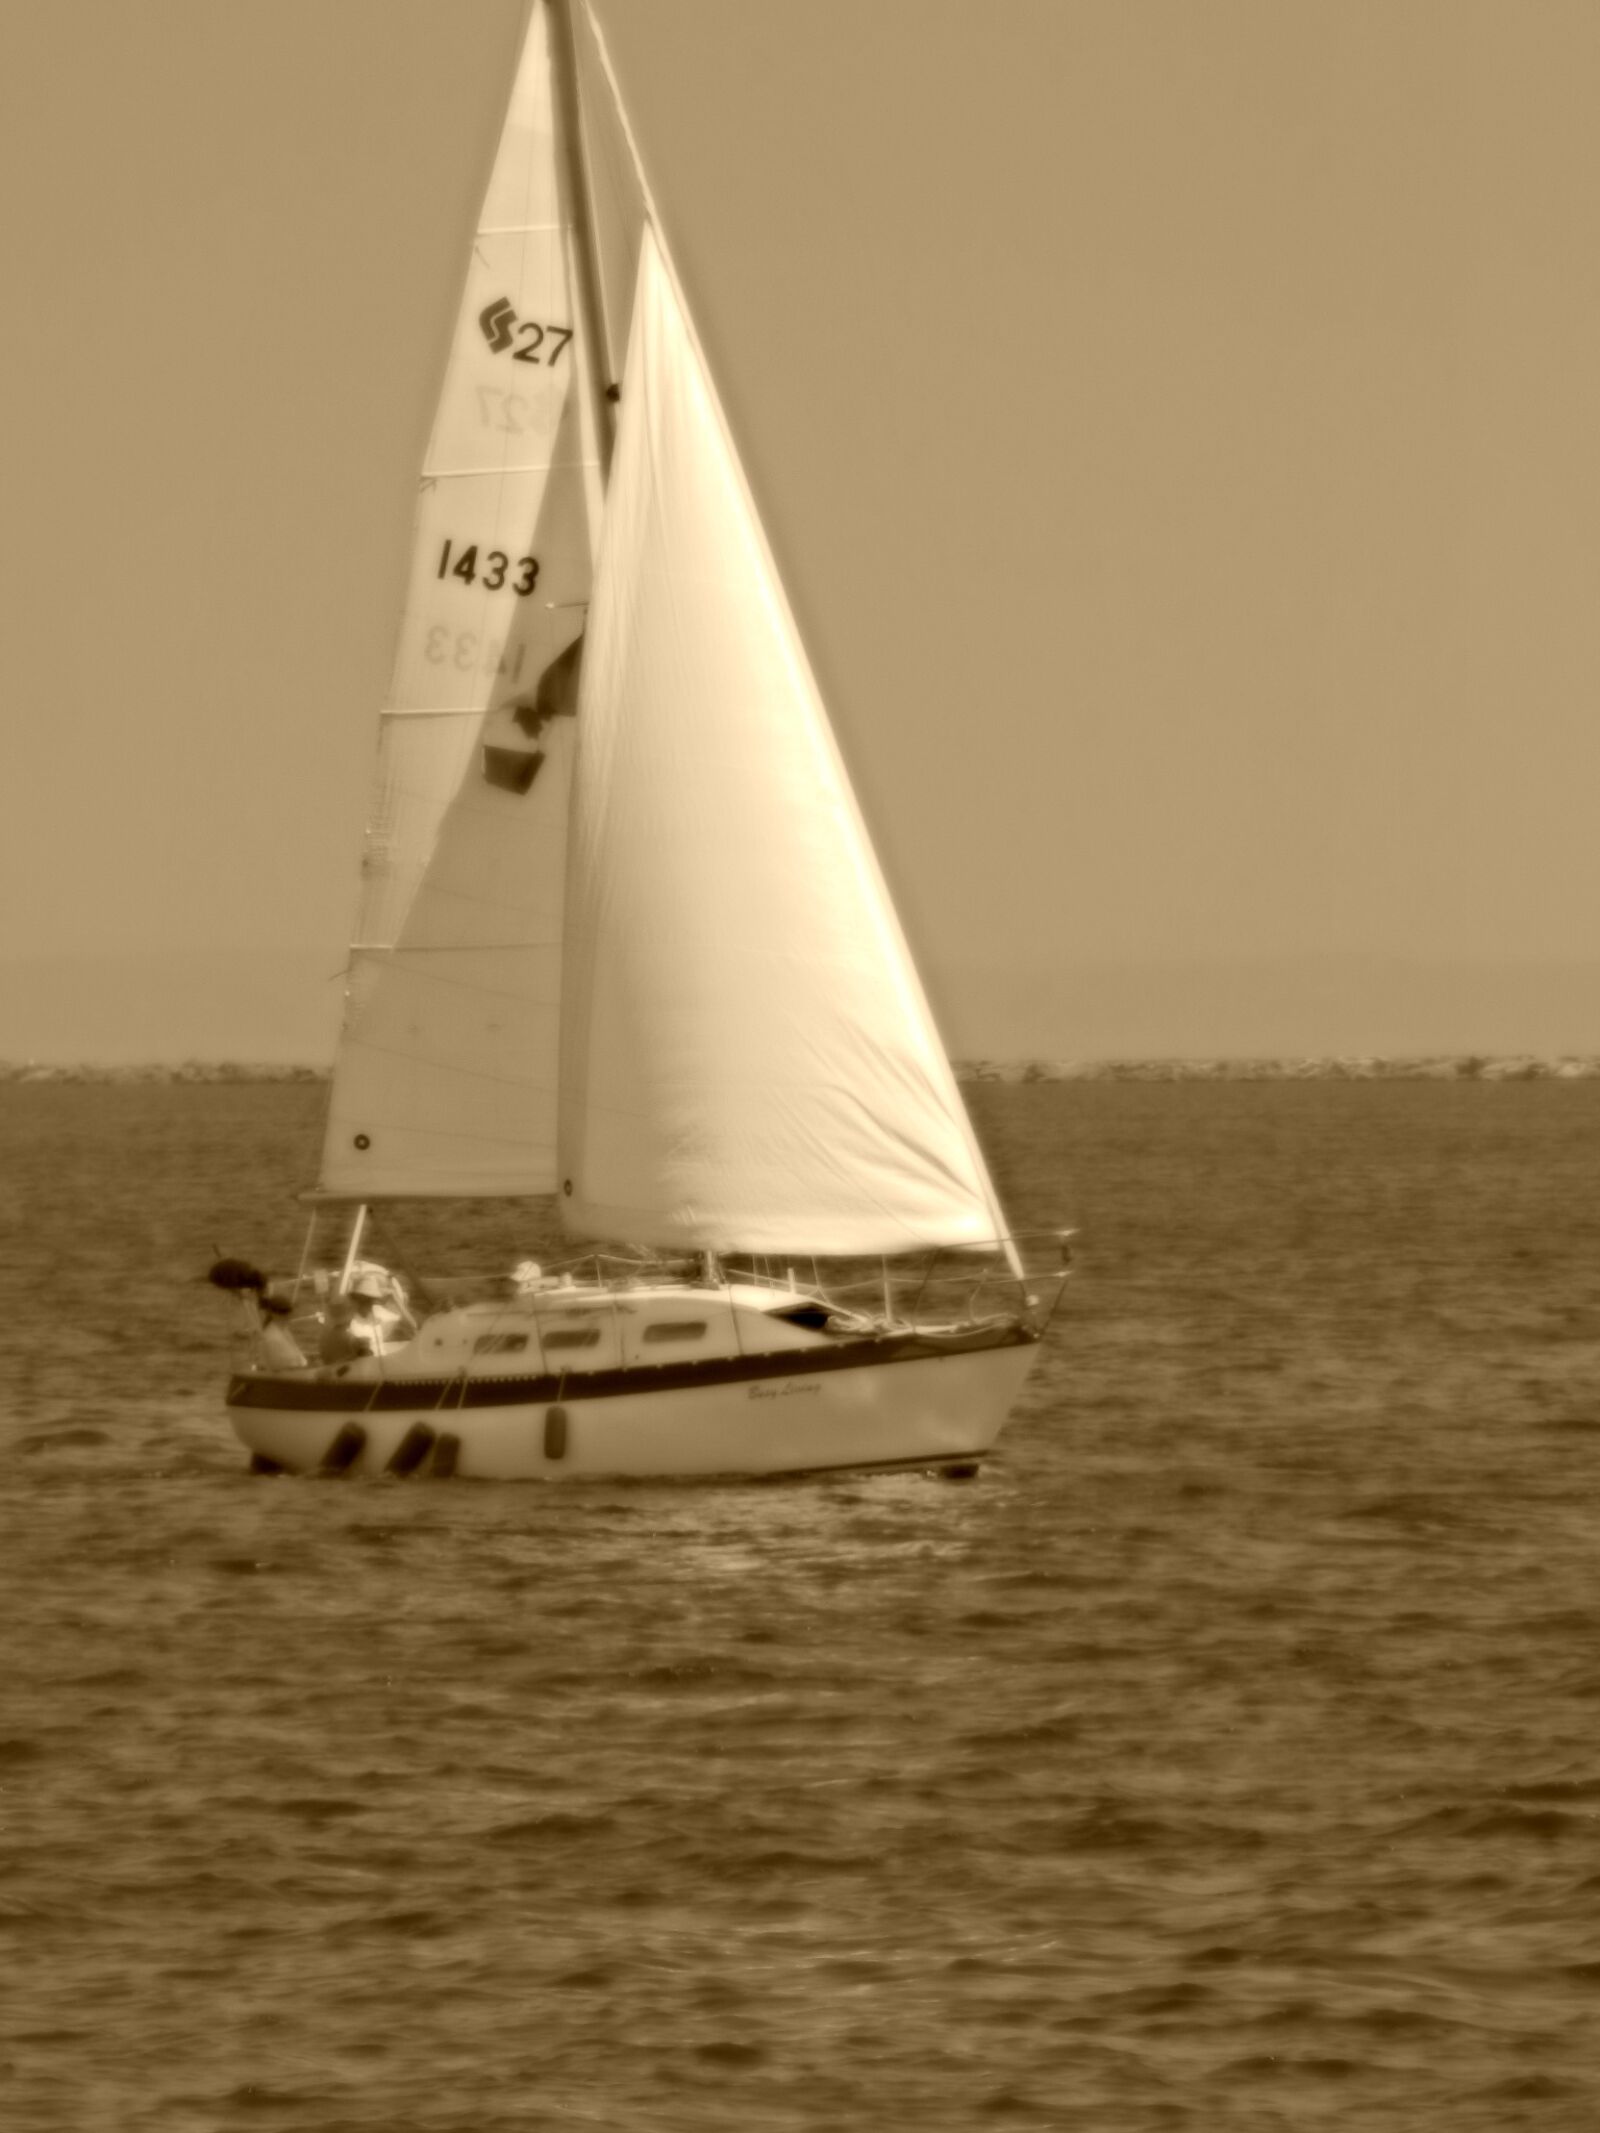 Nikon COOLPIX L310 sample photo. Cabin, lake, ropes, sail photography